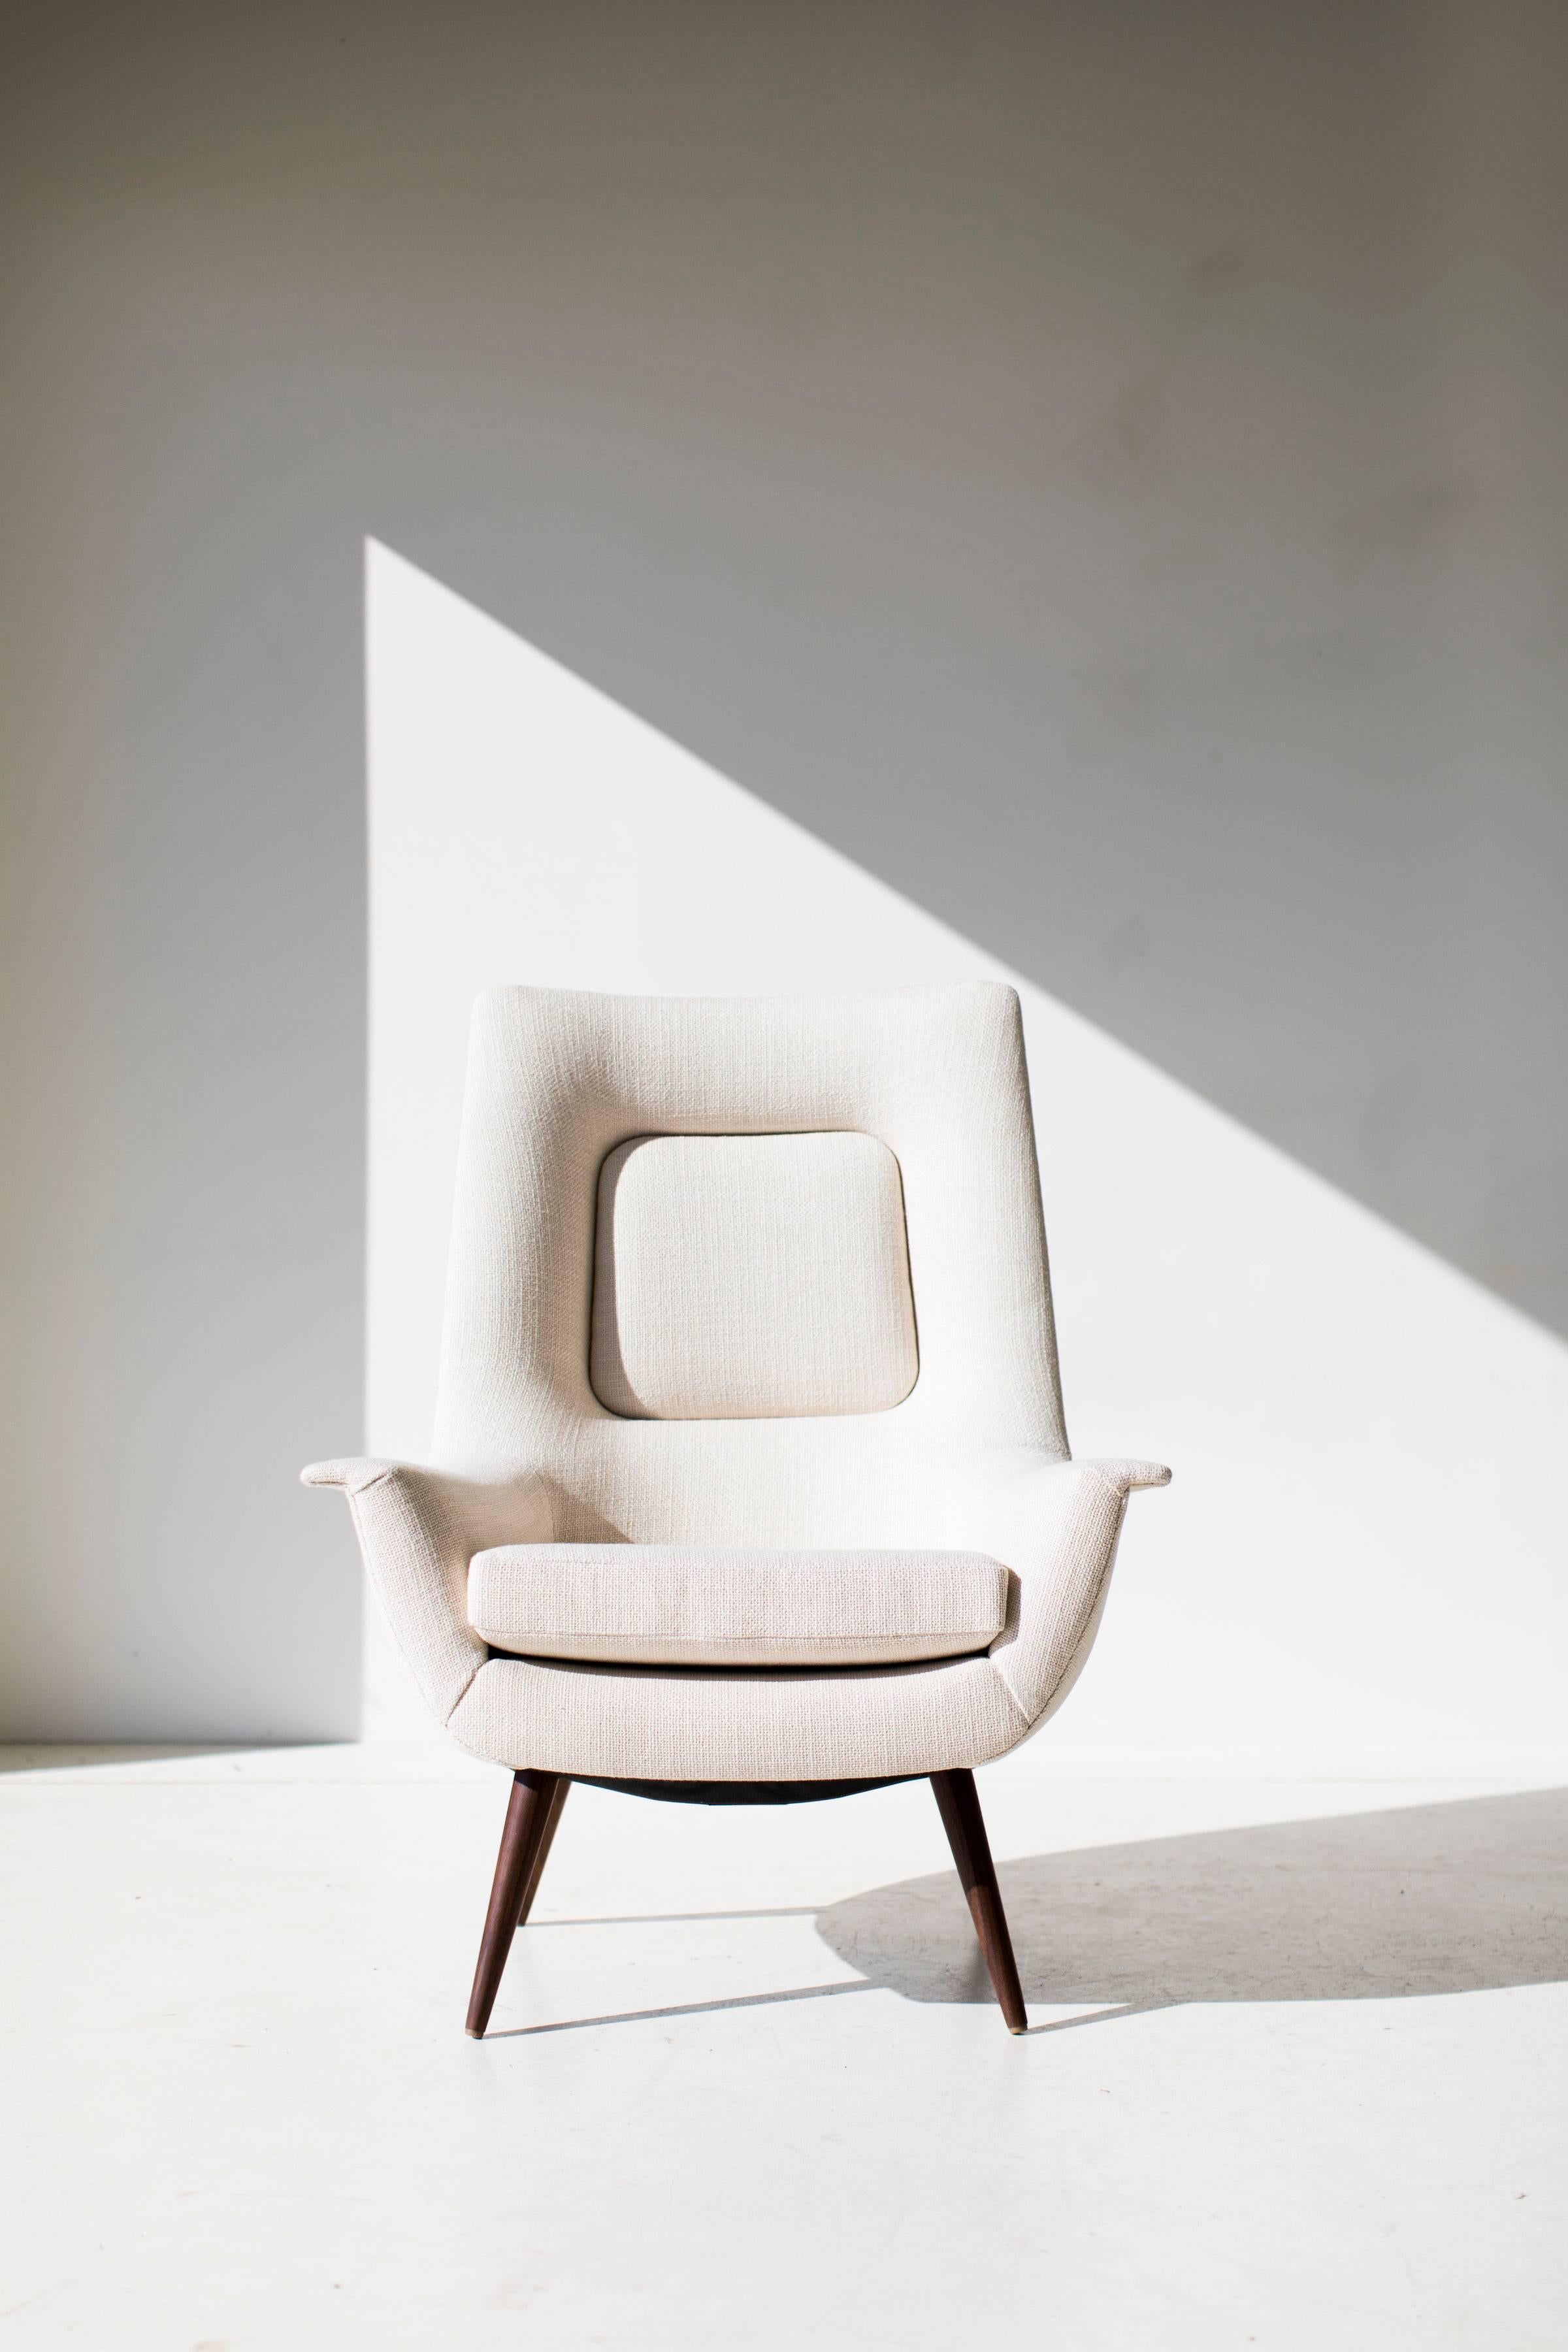 
Cette chaise longue à haut dossier Lawrence Peabody - P-1714 - Craft Associates® Furniture est fabriquée et rembourrée à la main par des experts. Cette chaise Peabody est une réintroduction sous licence pour Craft Associates®. Chaque fauteuil est